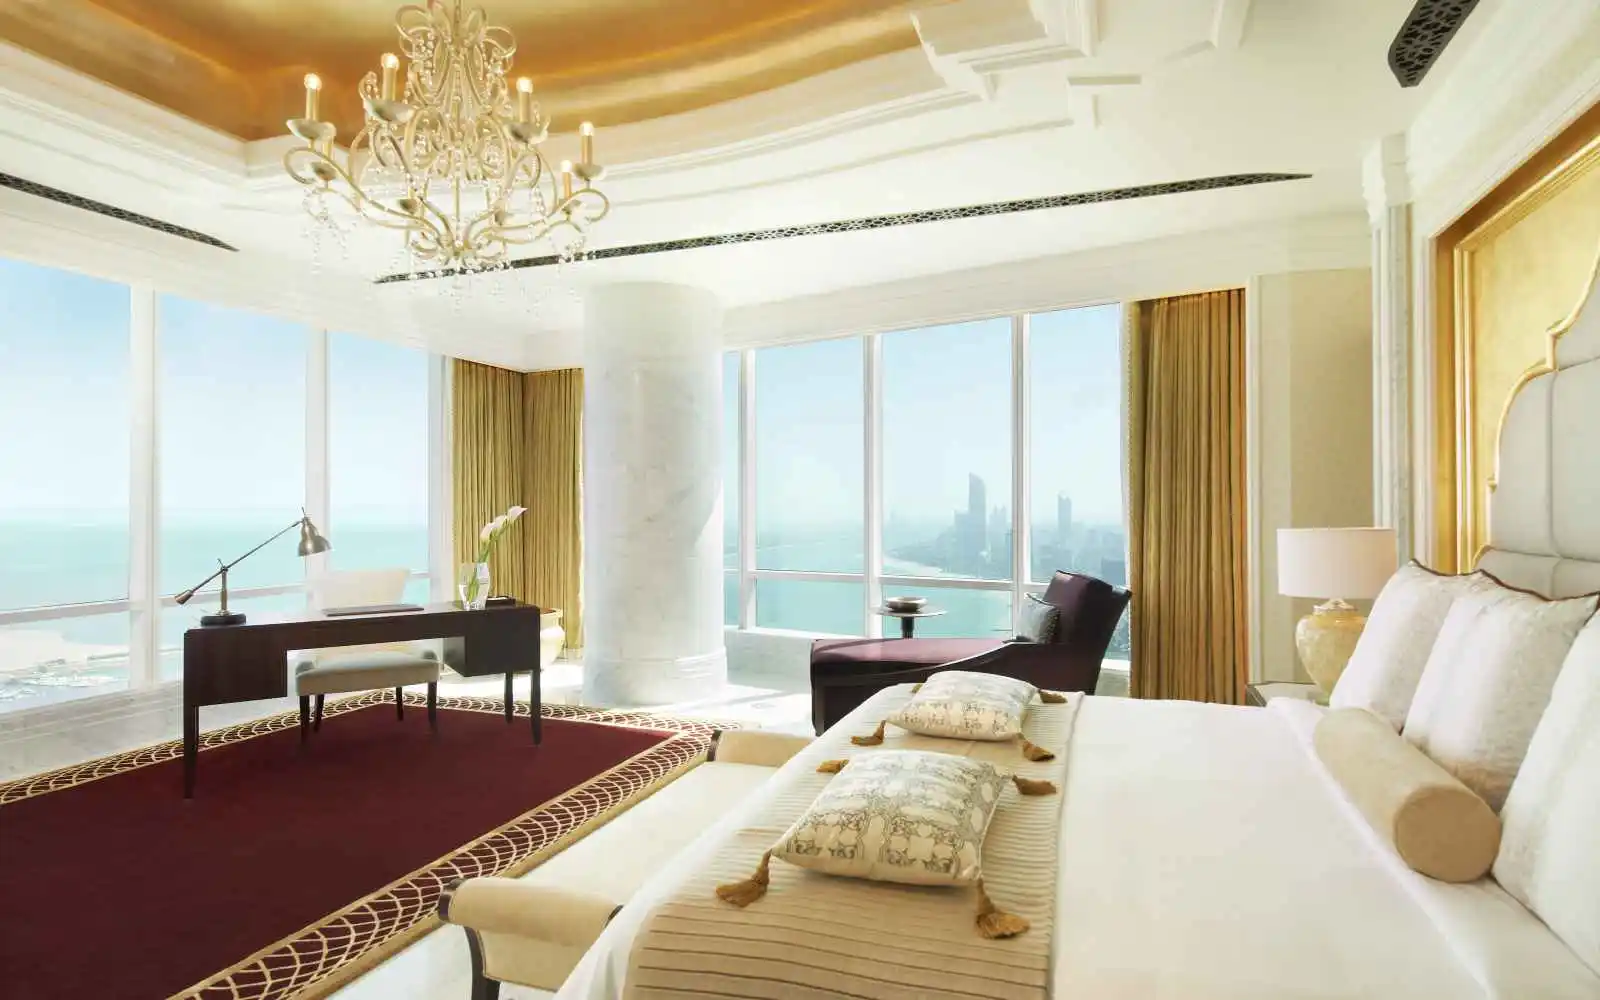 Al Hosen Suite, The St. Regis, Abou Dhabi